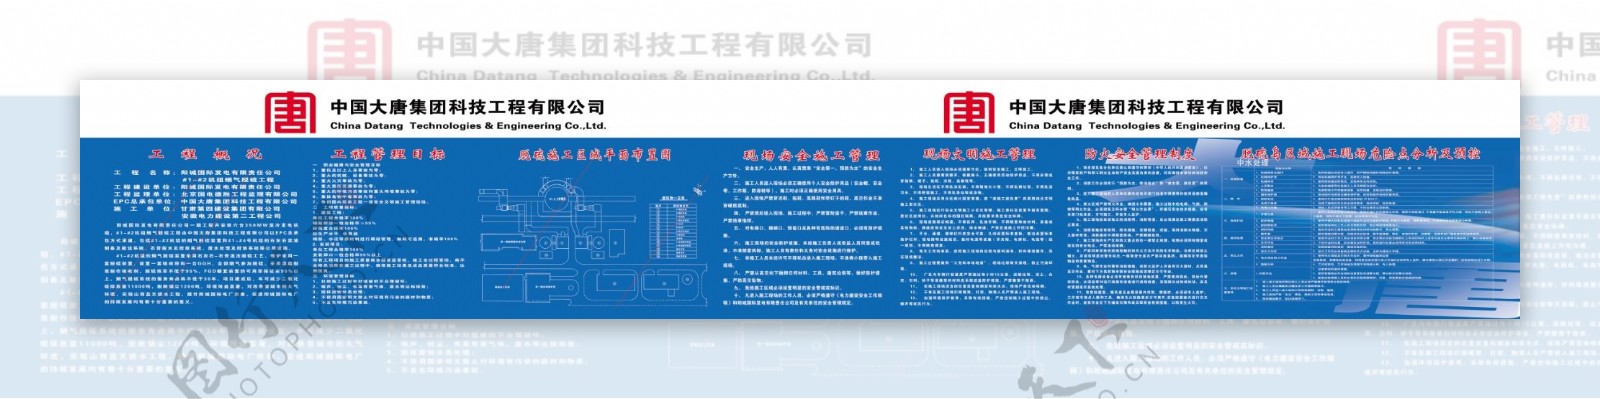 中国大唐集团科技工程六牌一图图片